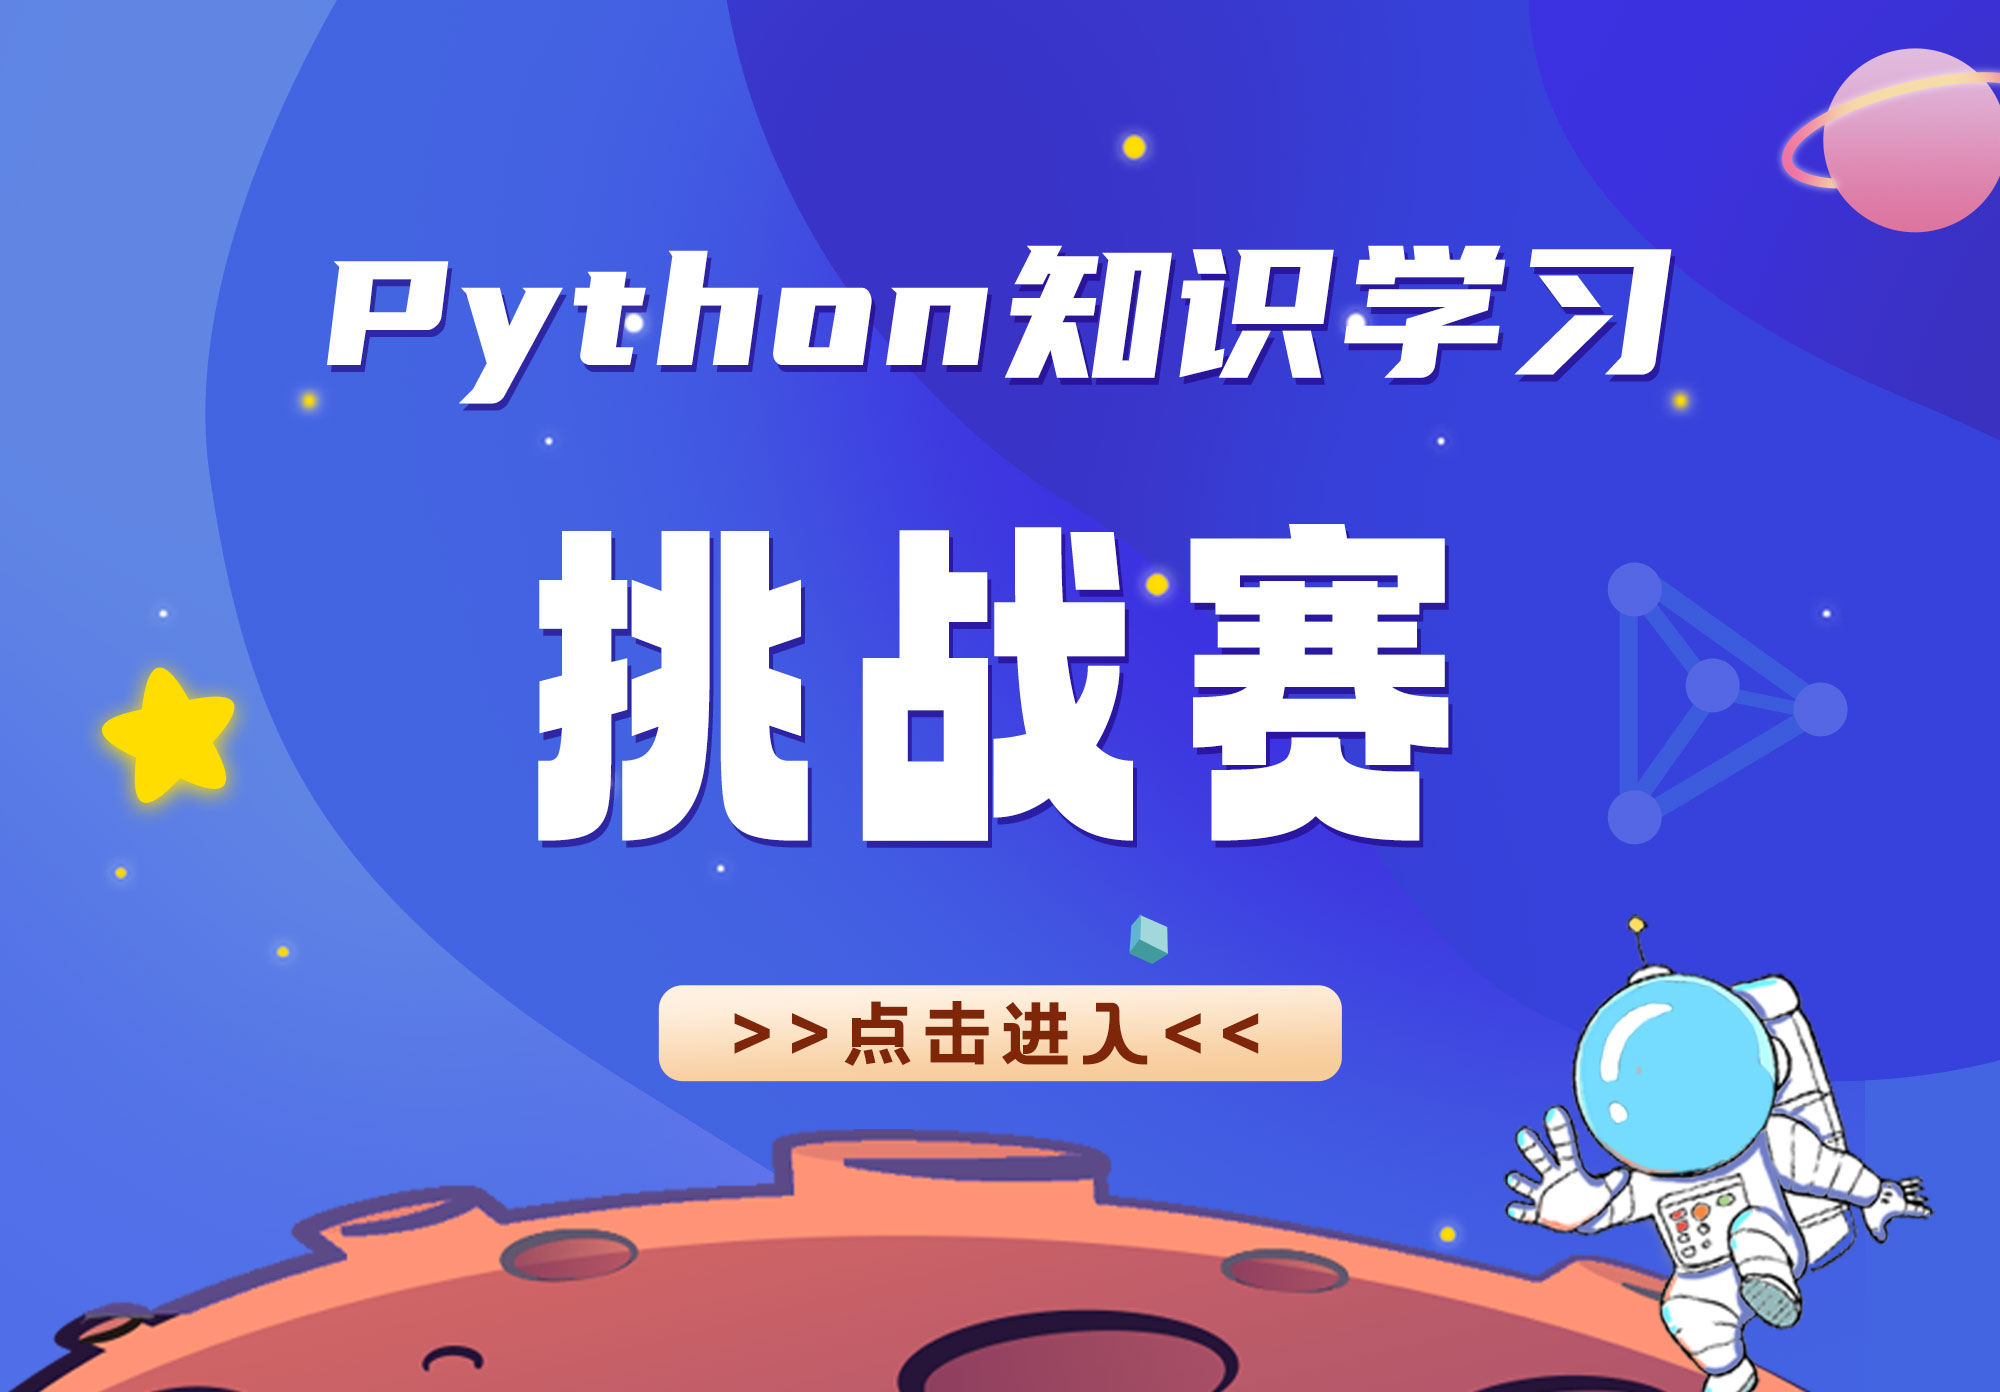 青少年Python编程知识互动挑战小程序上线啦！